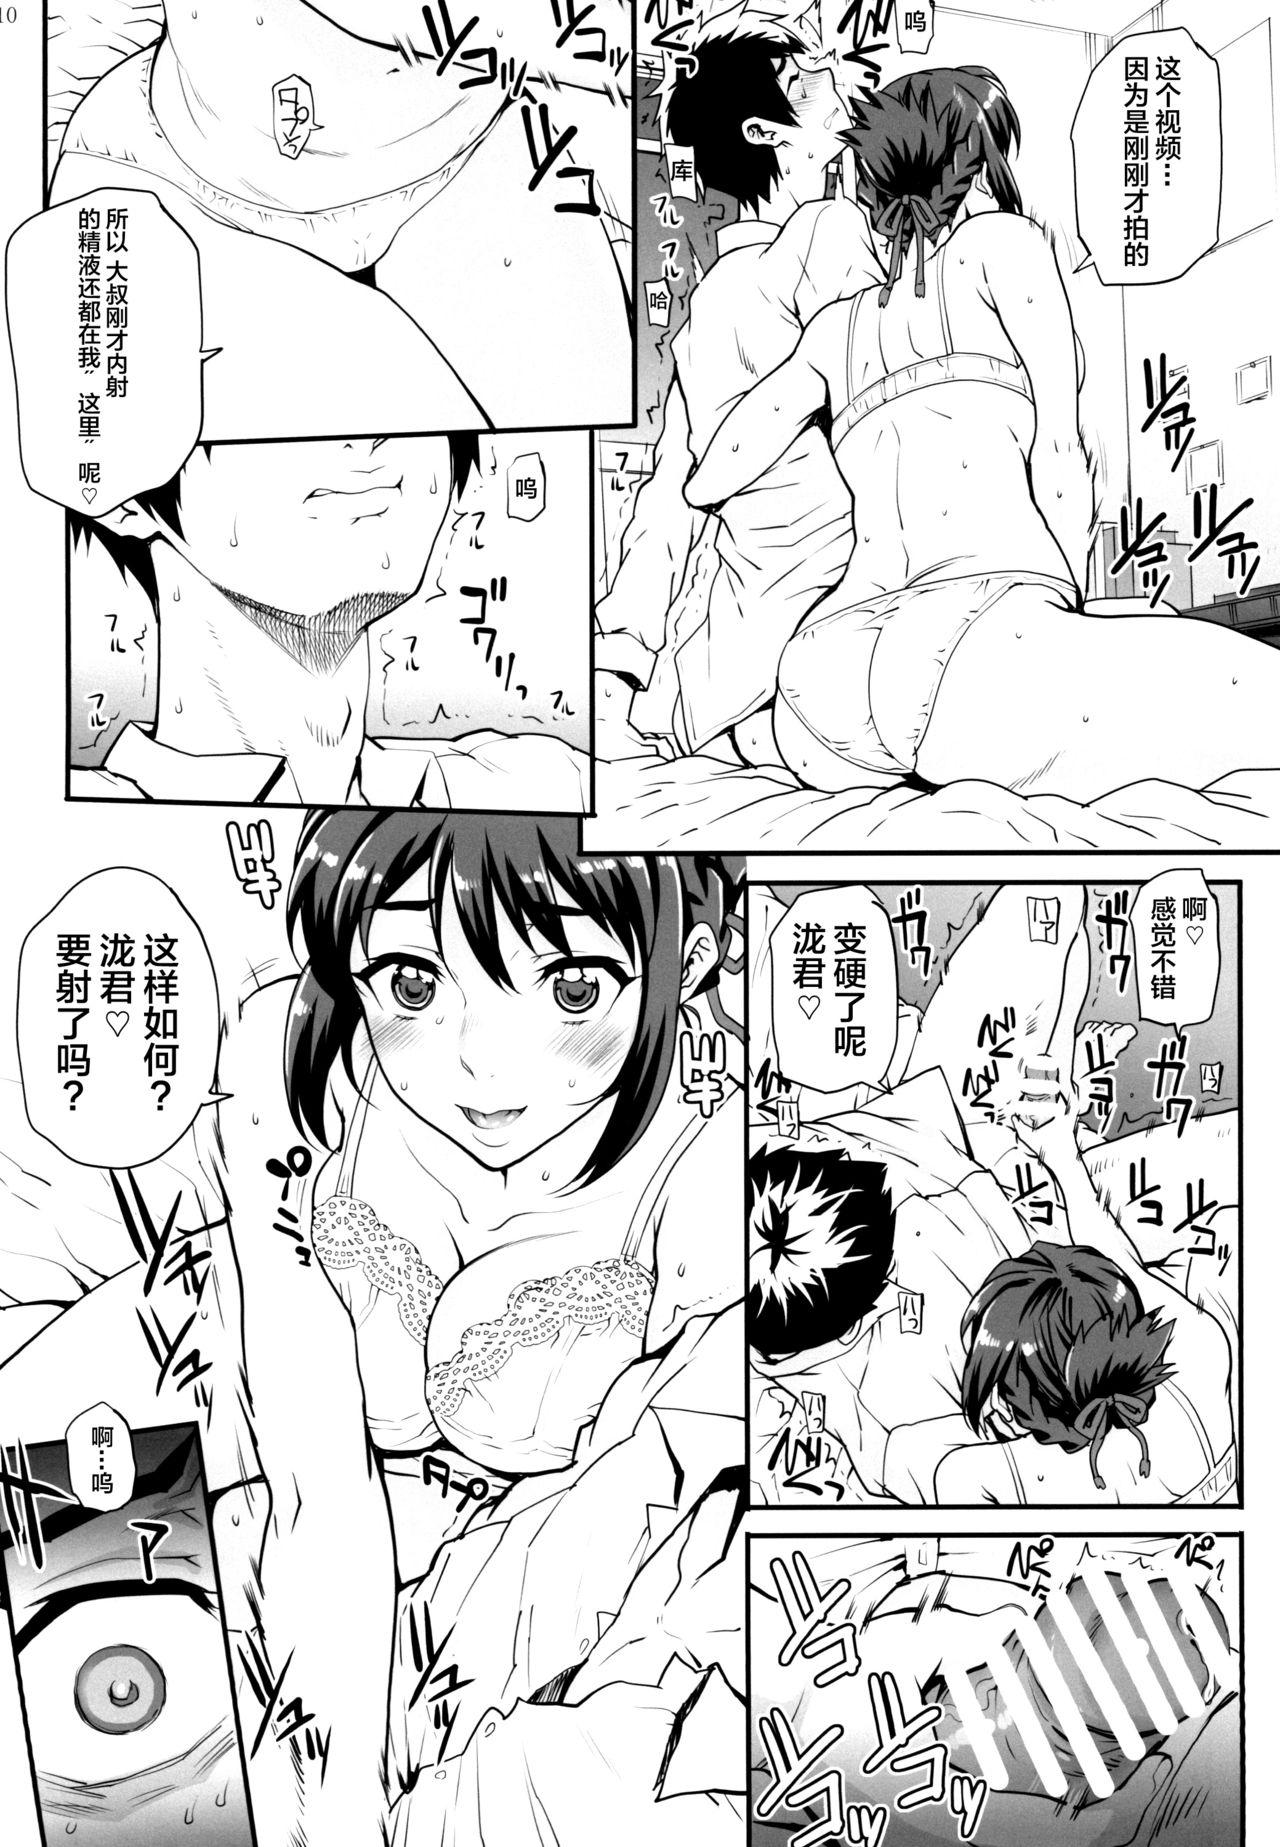 Harcore Kimi no Janai. Zoku - Kimi no na wa. Hot Girl Porn - Page 12